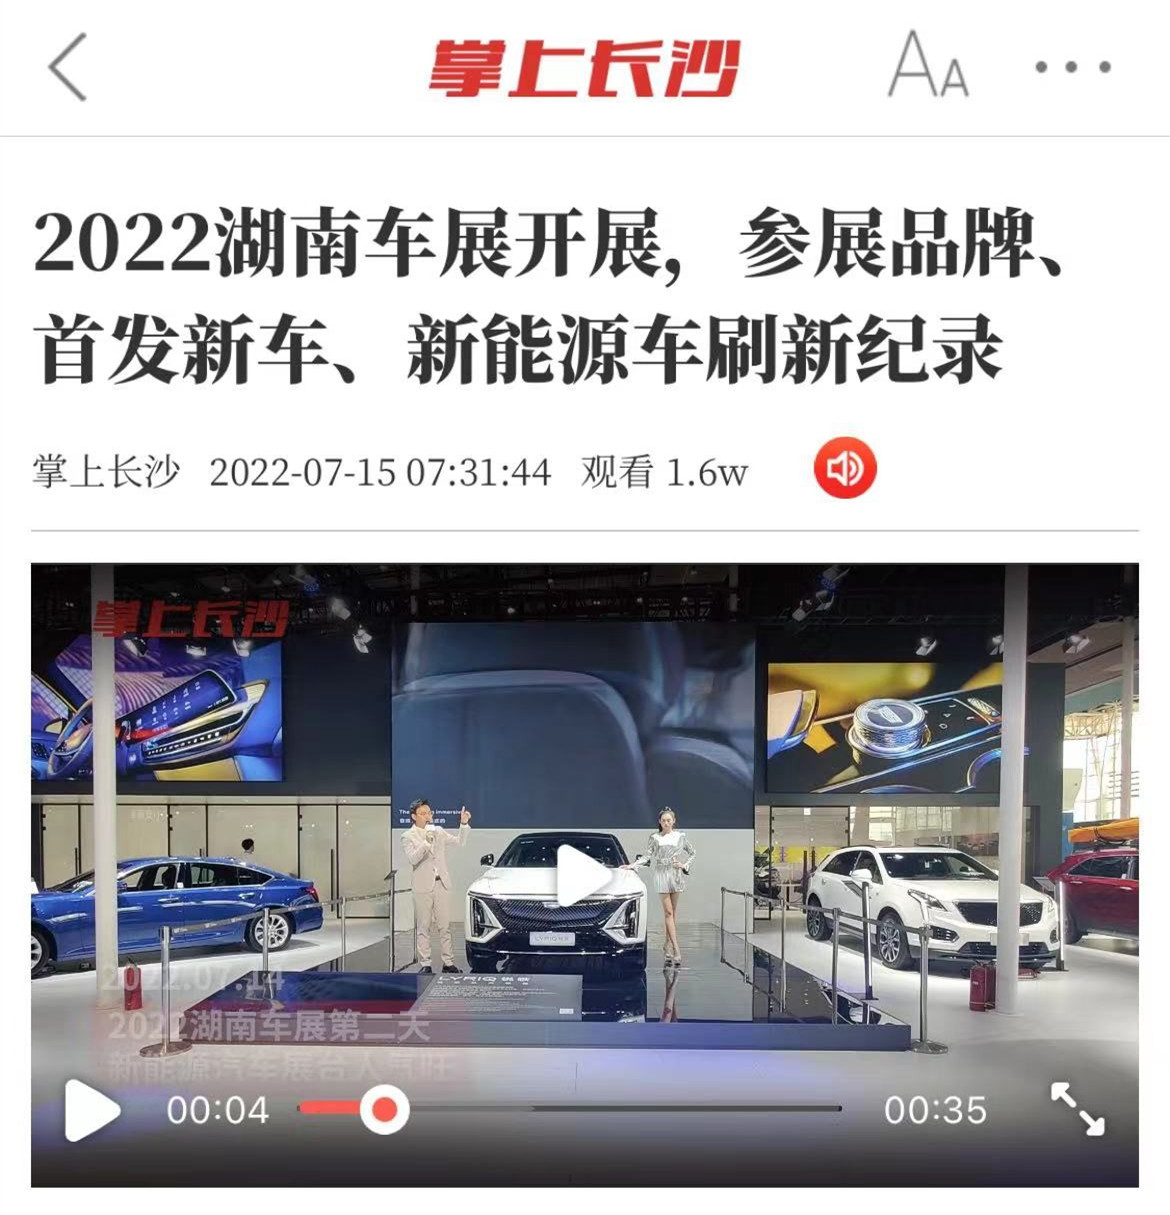 2022年7月15日湖南车展视频截图。